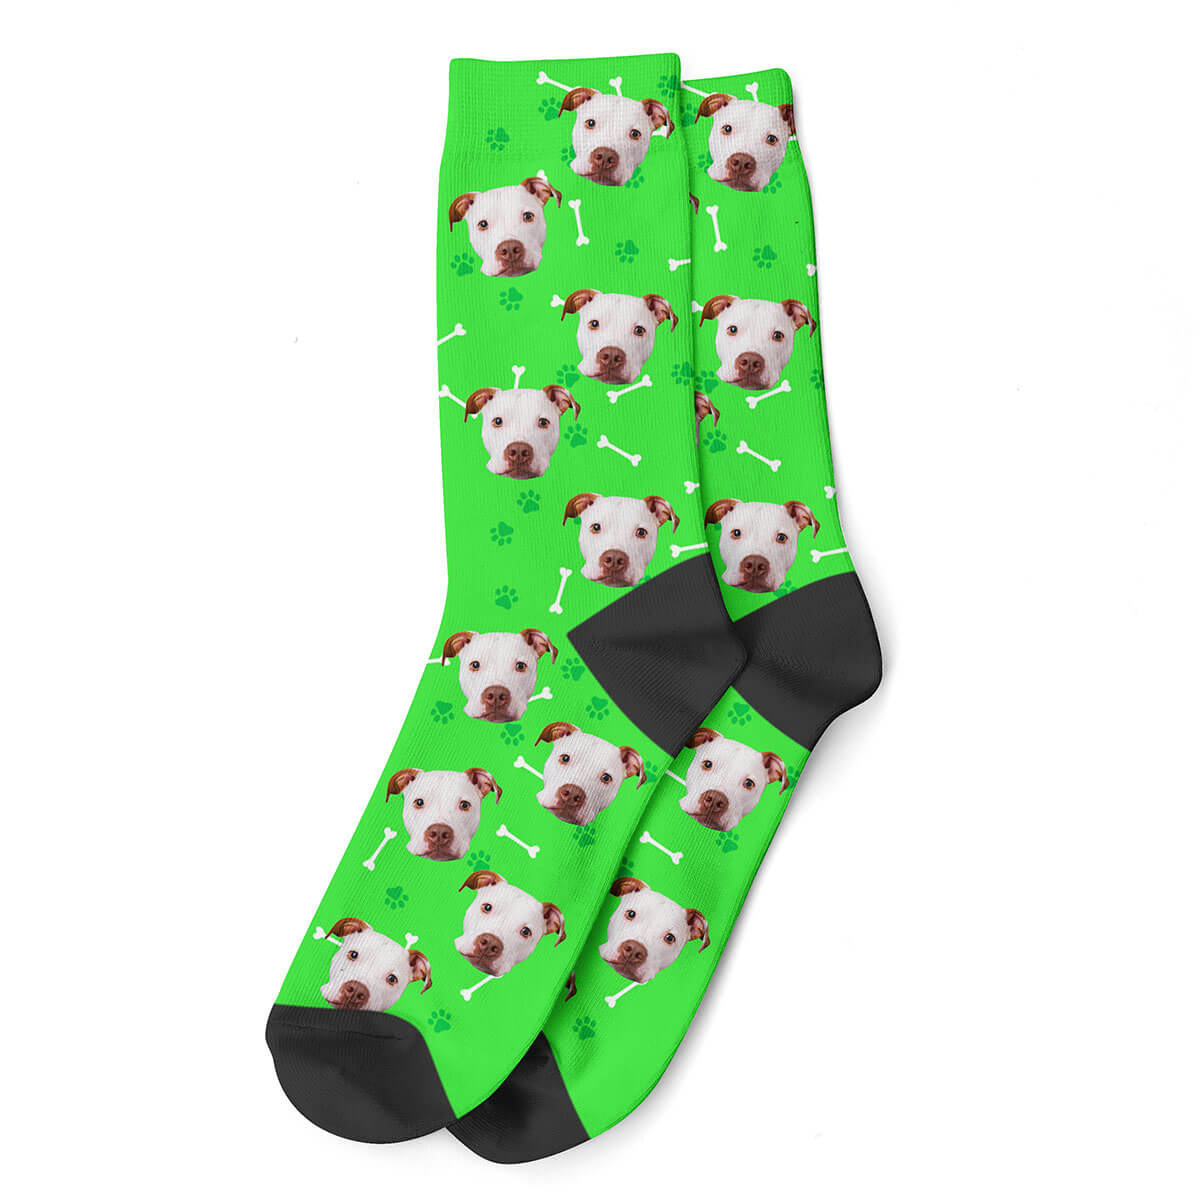 Calcetines personalizados con foto de tu perro, calcetines divertidos